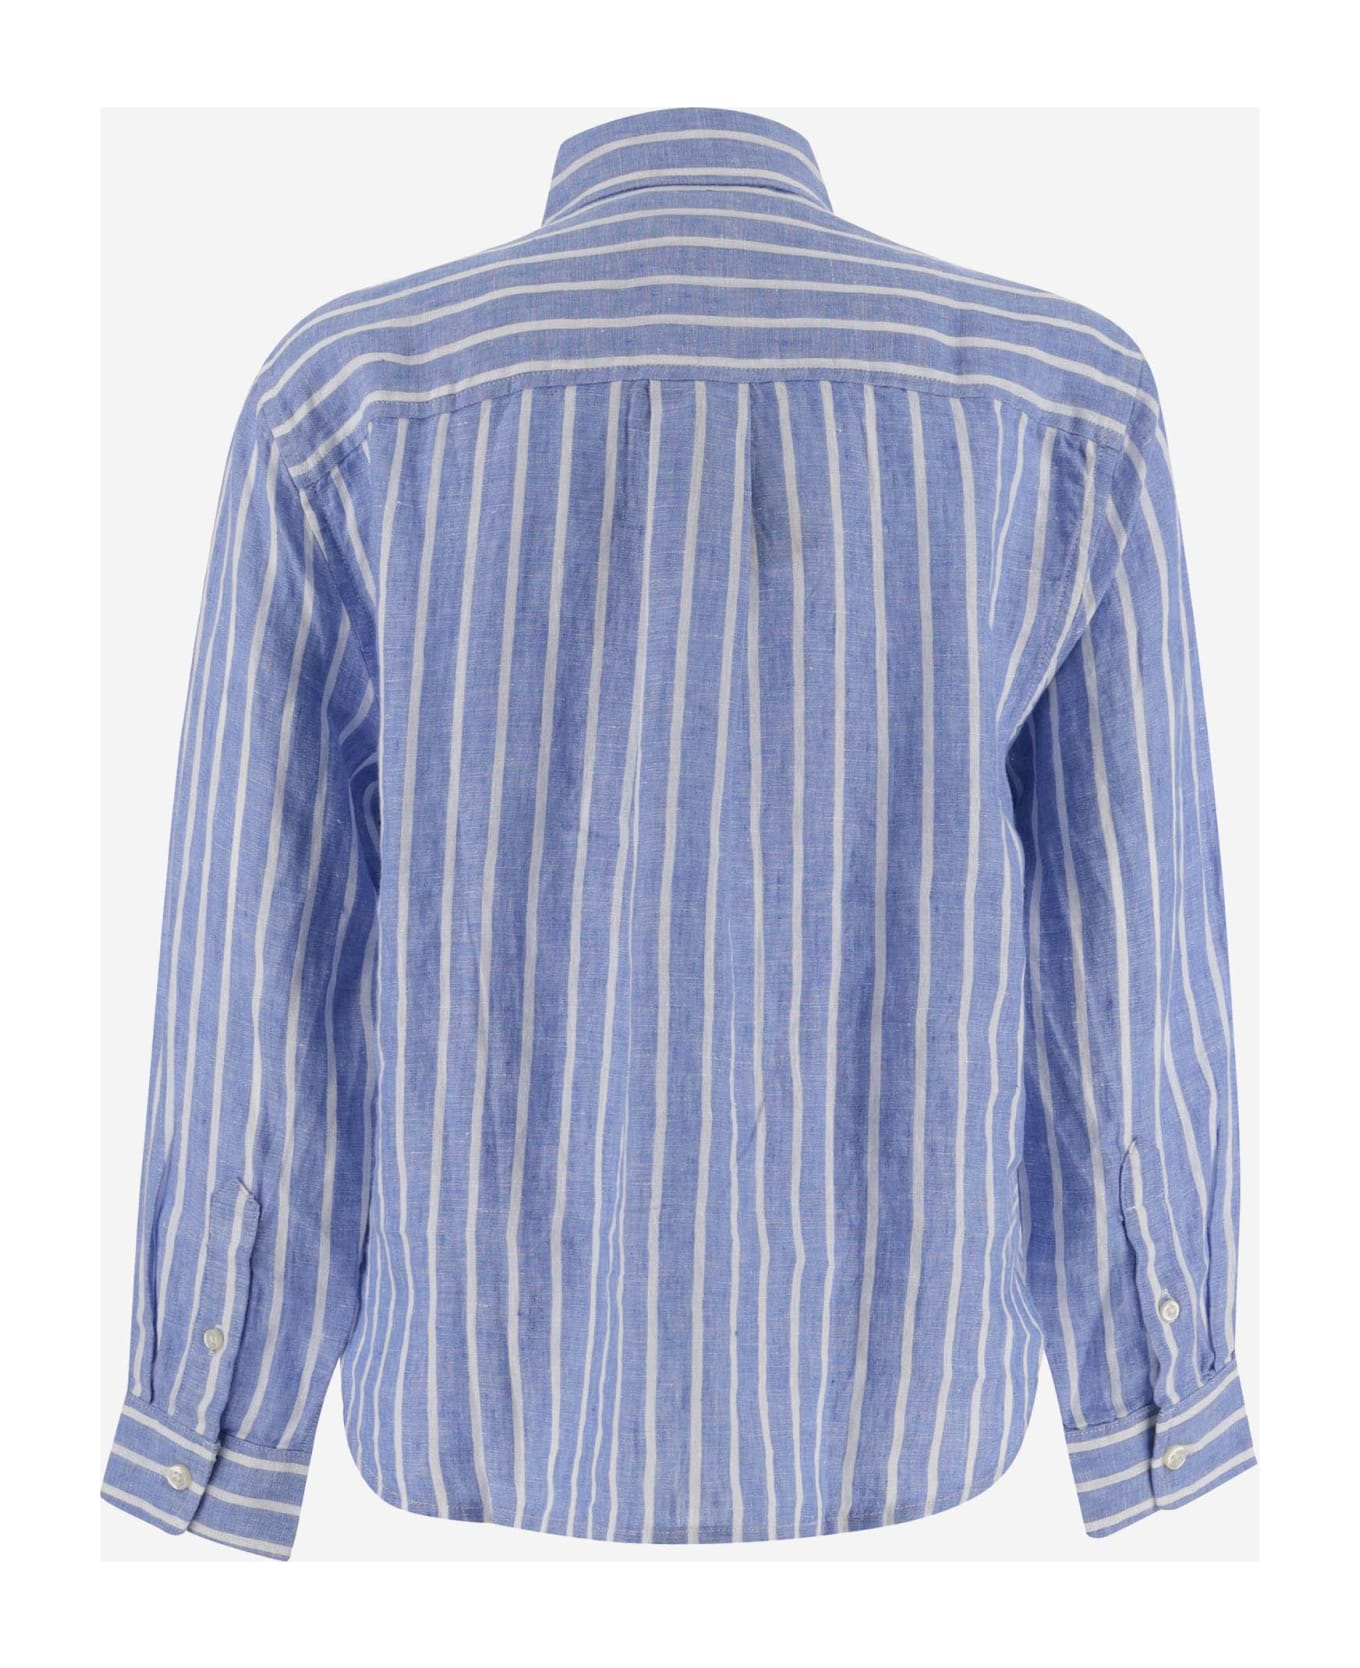 Ralph Lauren Striped Linen Shirt With Logo - Blu シャツ